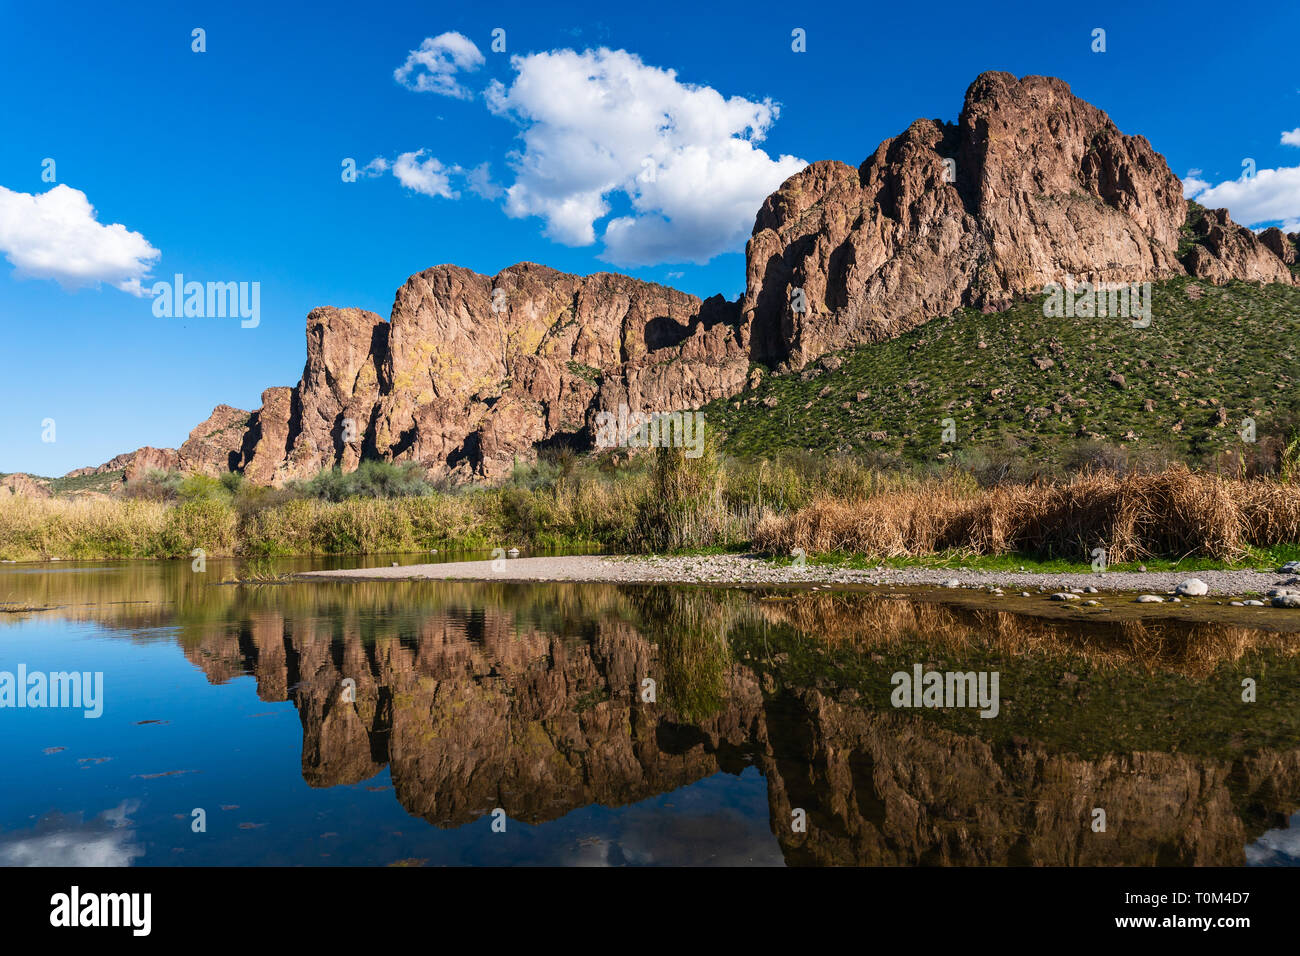 La rivière Salt reflète les montagnes du désert dans l'eau calme près de Mesa, en Arizona Banque D'Images